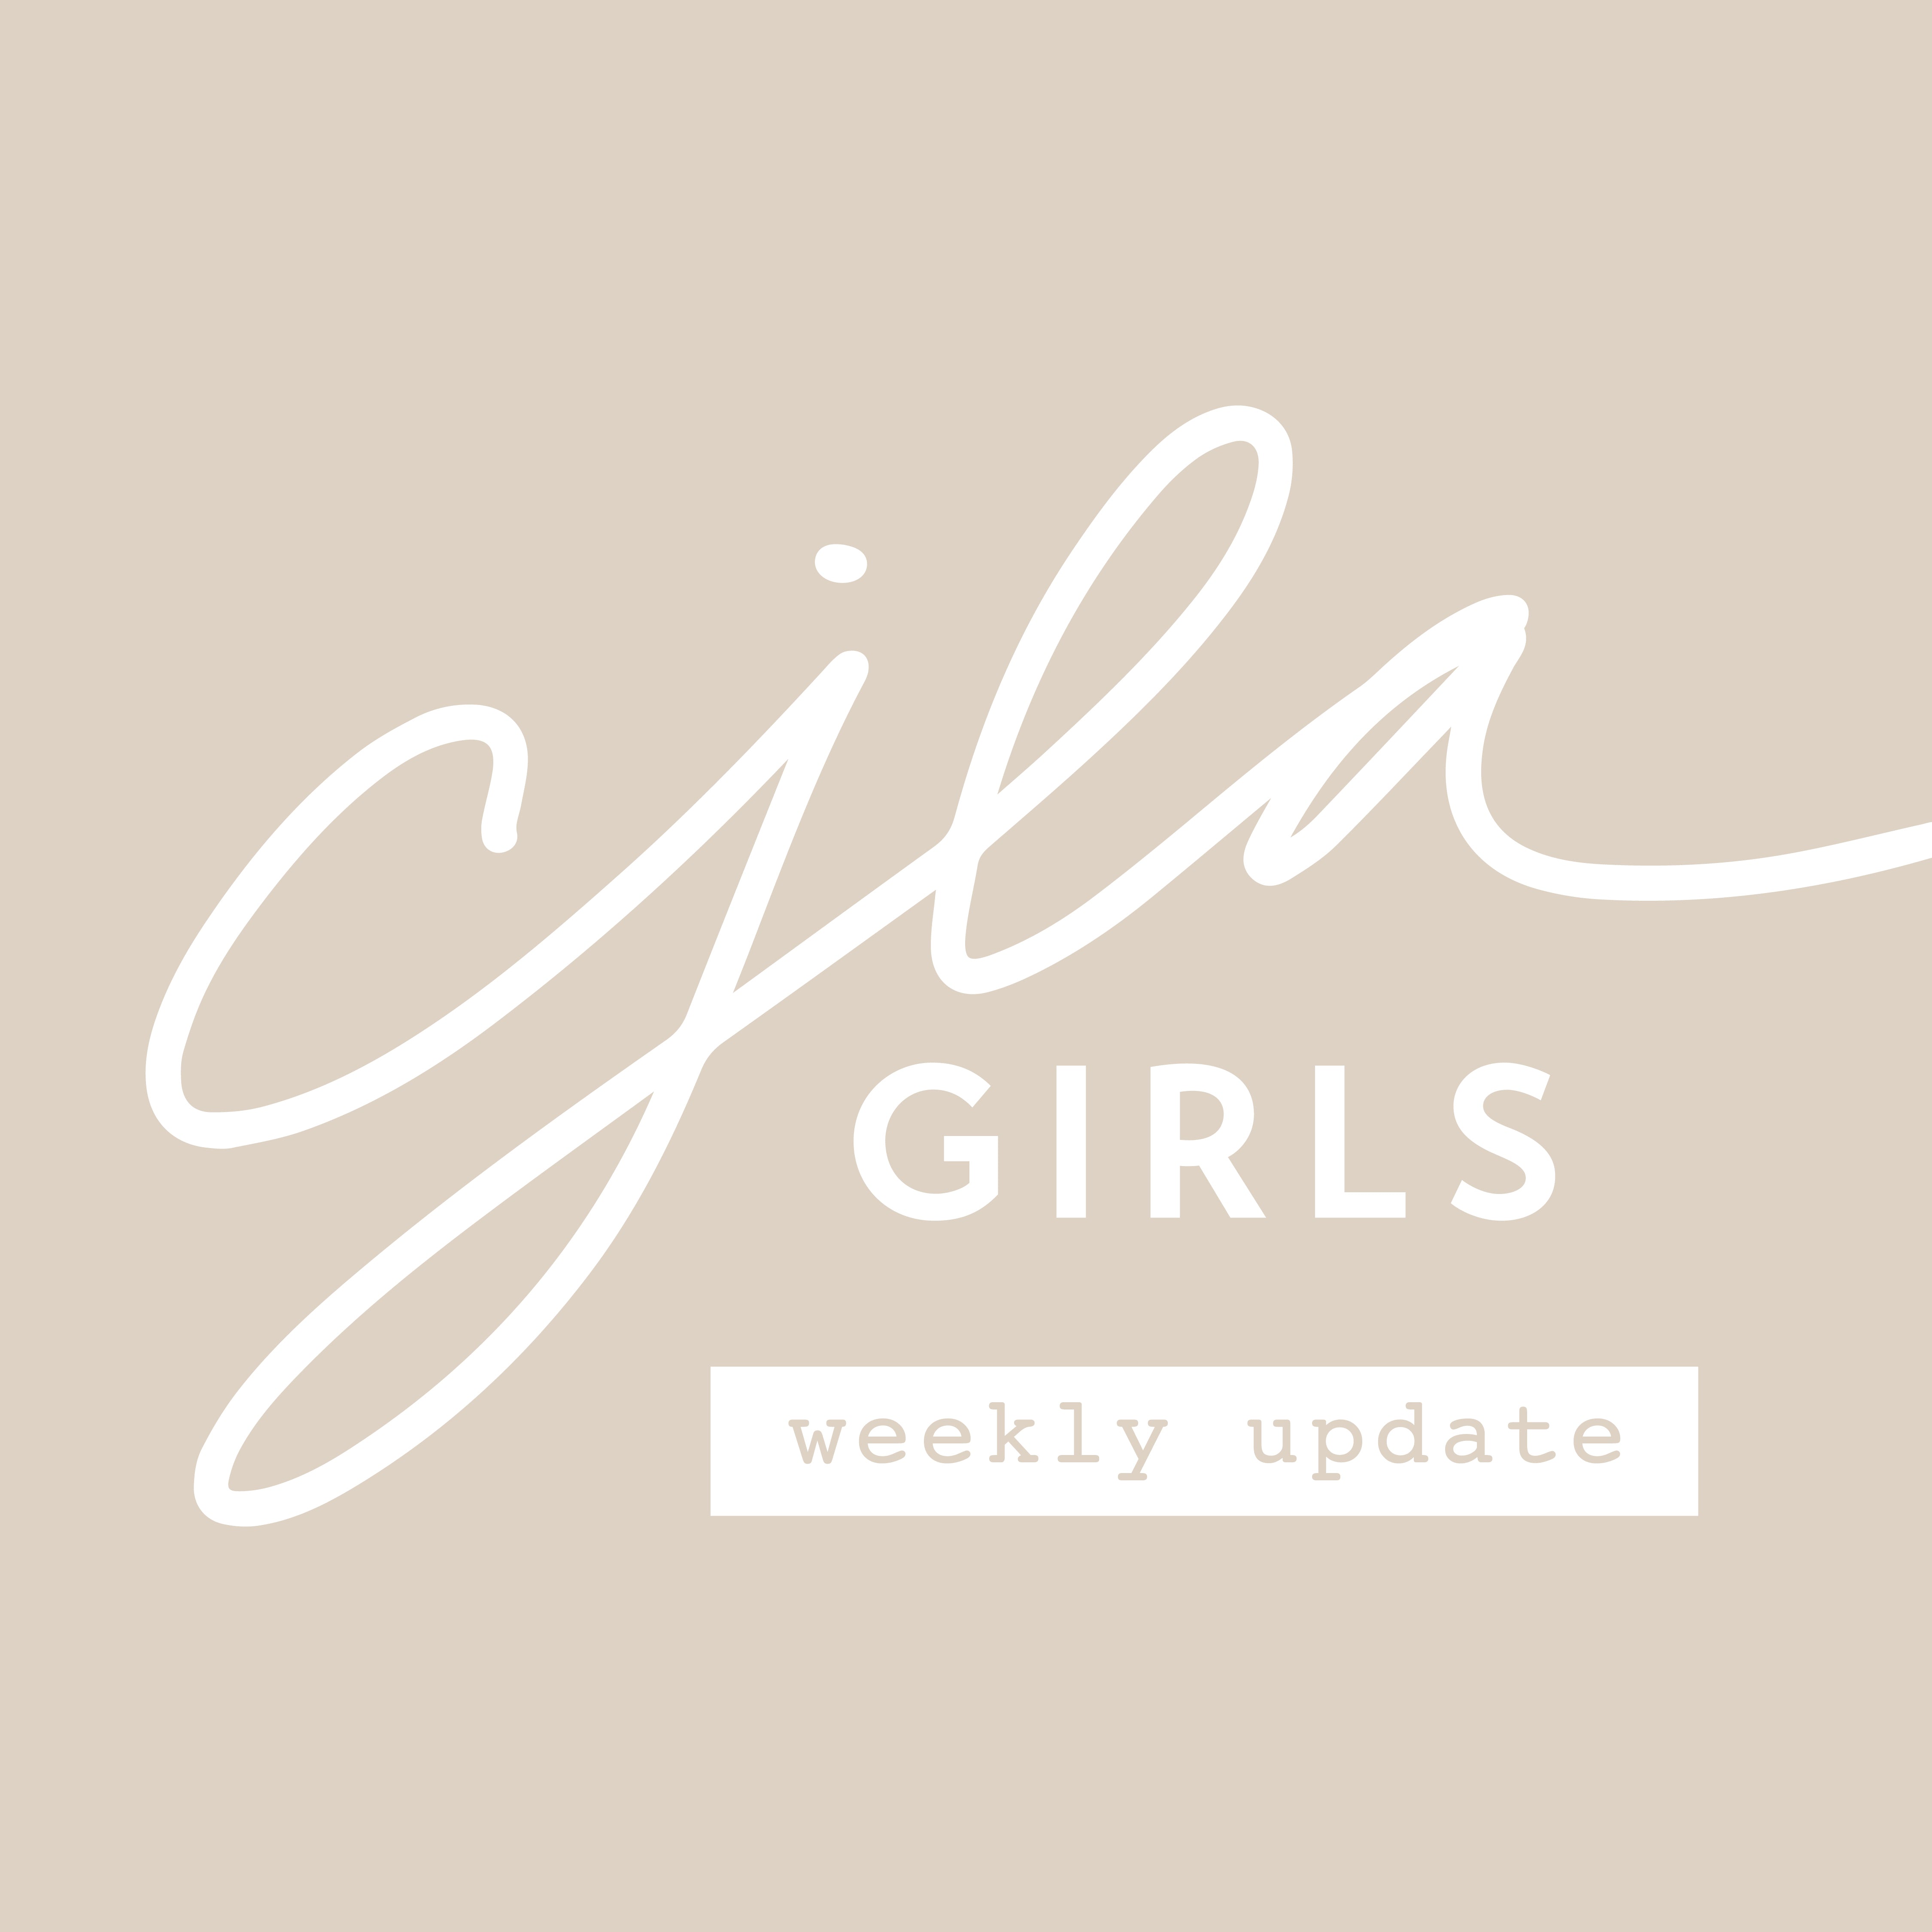 CJLA Girls Weekly Update: August 2-8